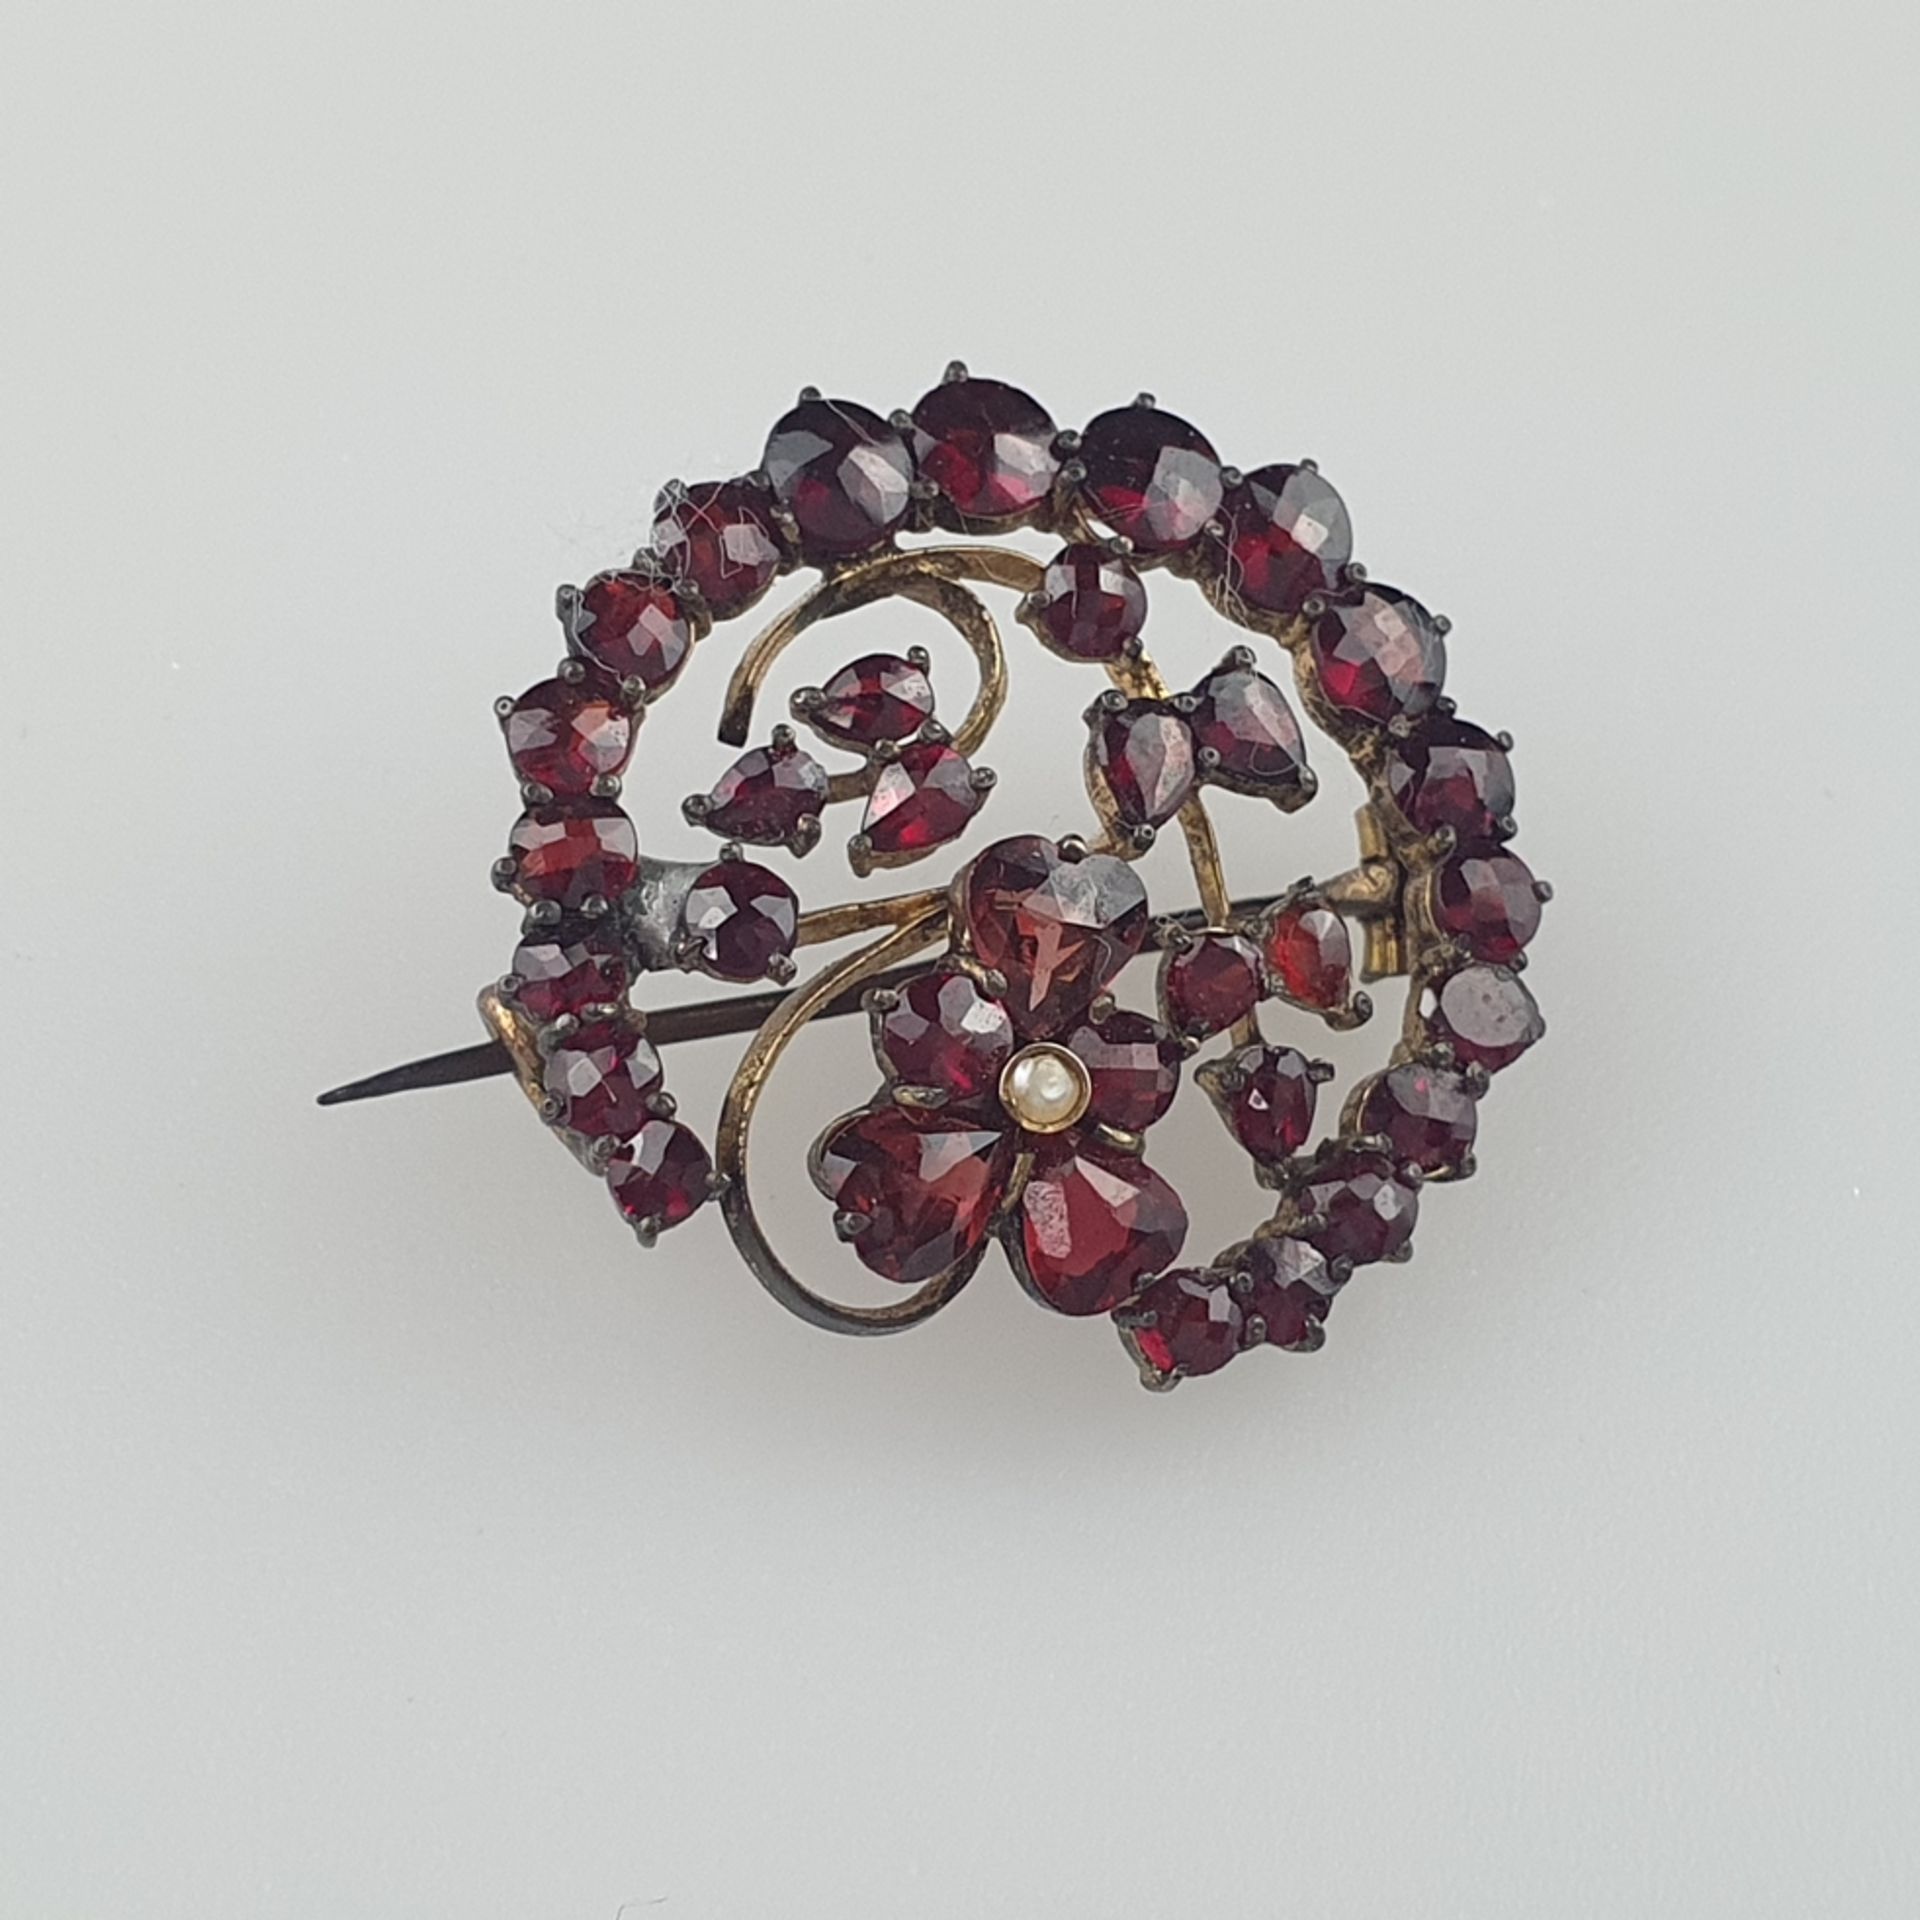 Granatbrosche - Tombak, von Kranz umgebene Blütenform, besetzt mit facettierten Granaten und einer